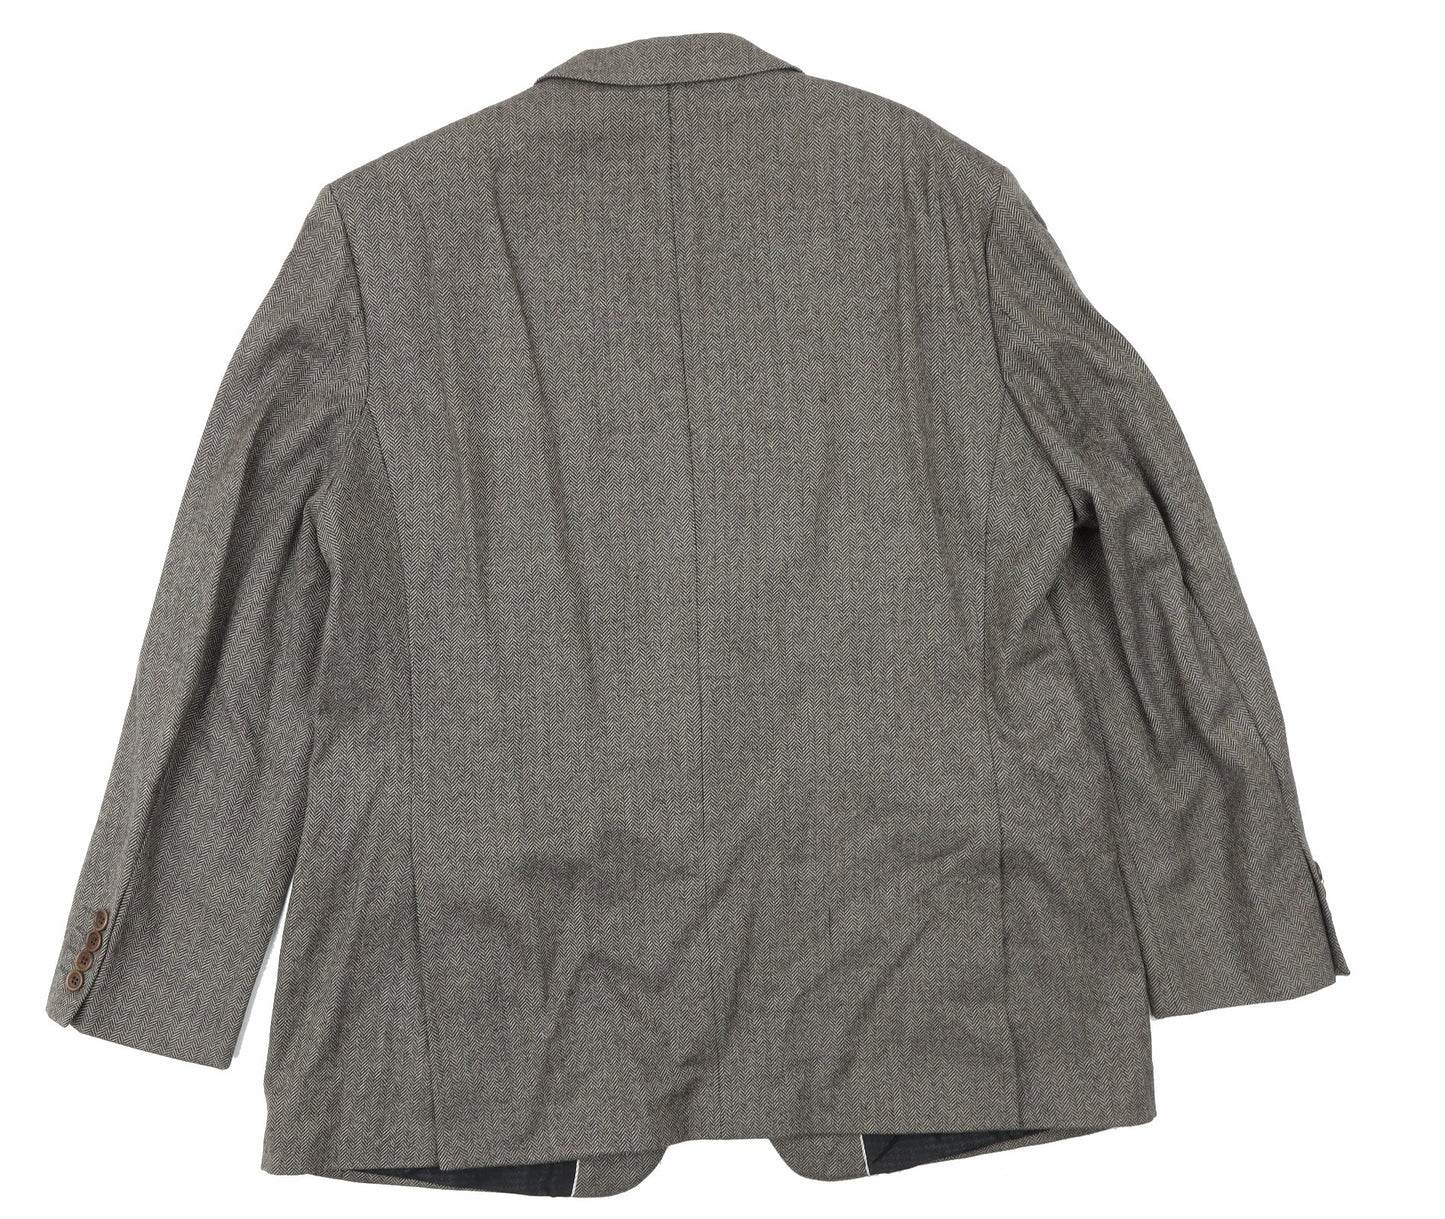 Marks and Spencer Mens Brown Wool Jacket Suit Jacket Size 44 Regular